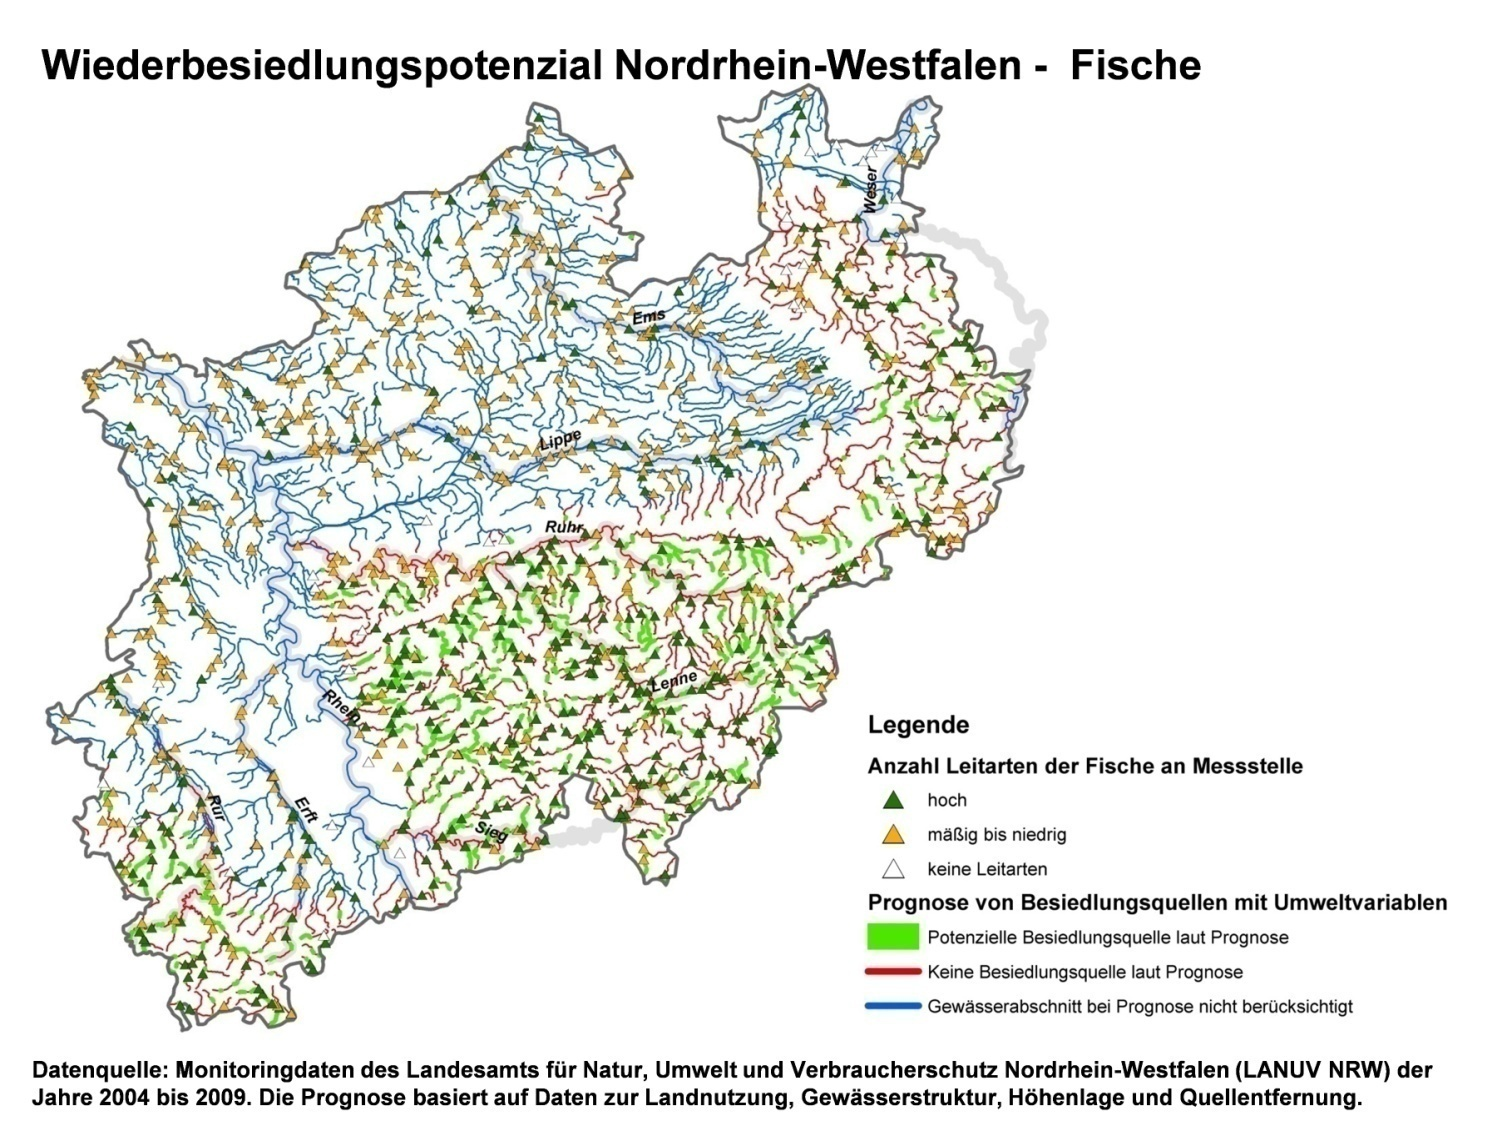 Abbildung 7.3: Wiederbesiedlungspotenzial der Fische in Nordrhein-Westfalen.